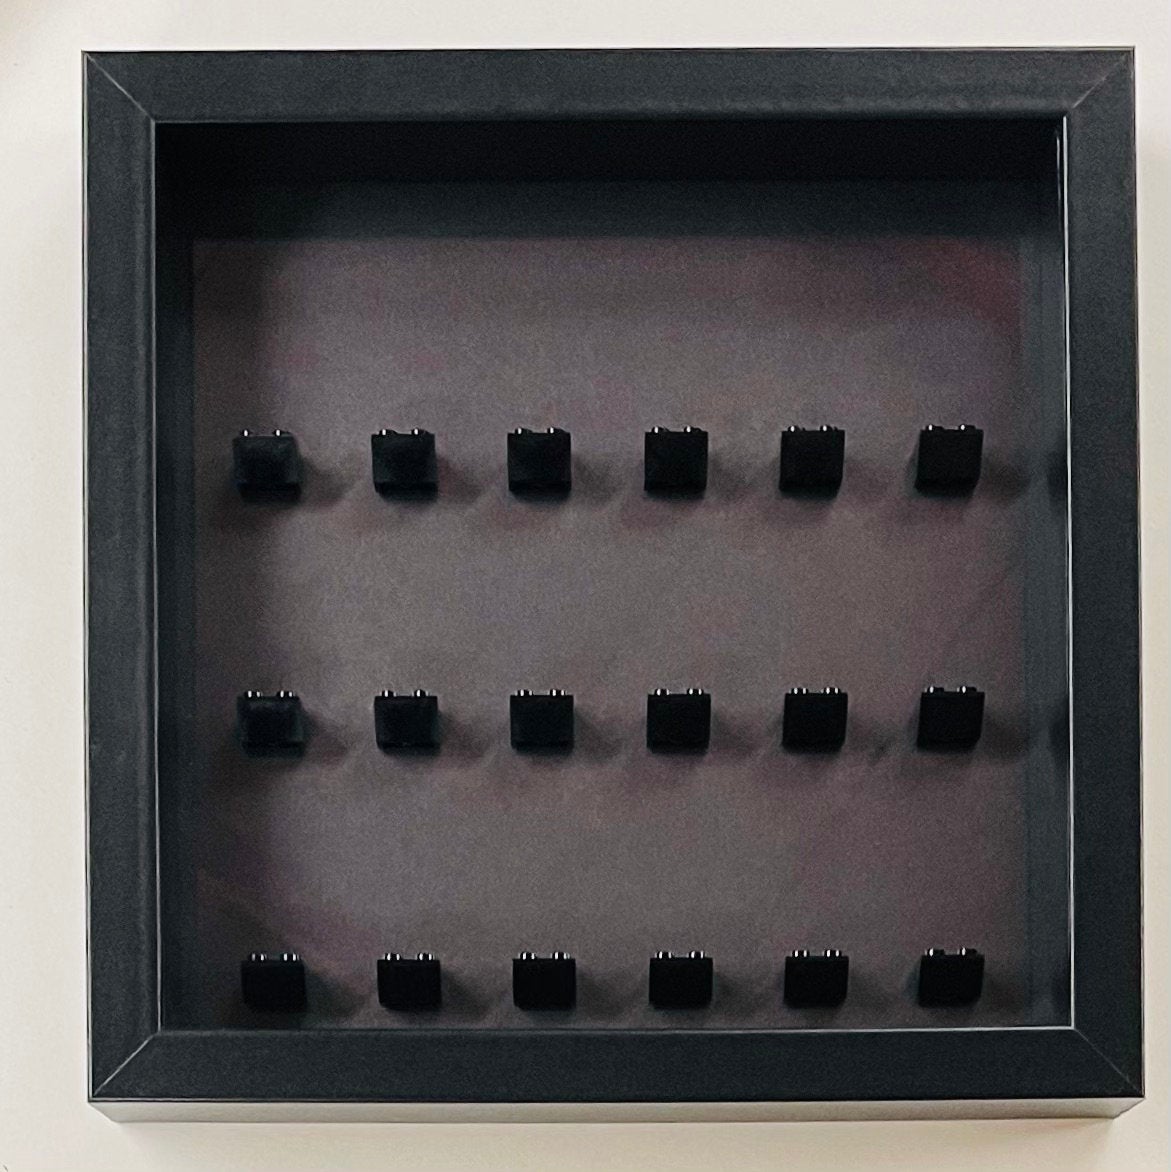 Display frame case for Lego General  Minifigures 25CM No Figures Black  background